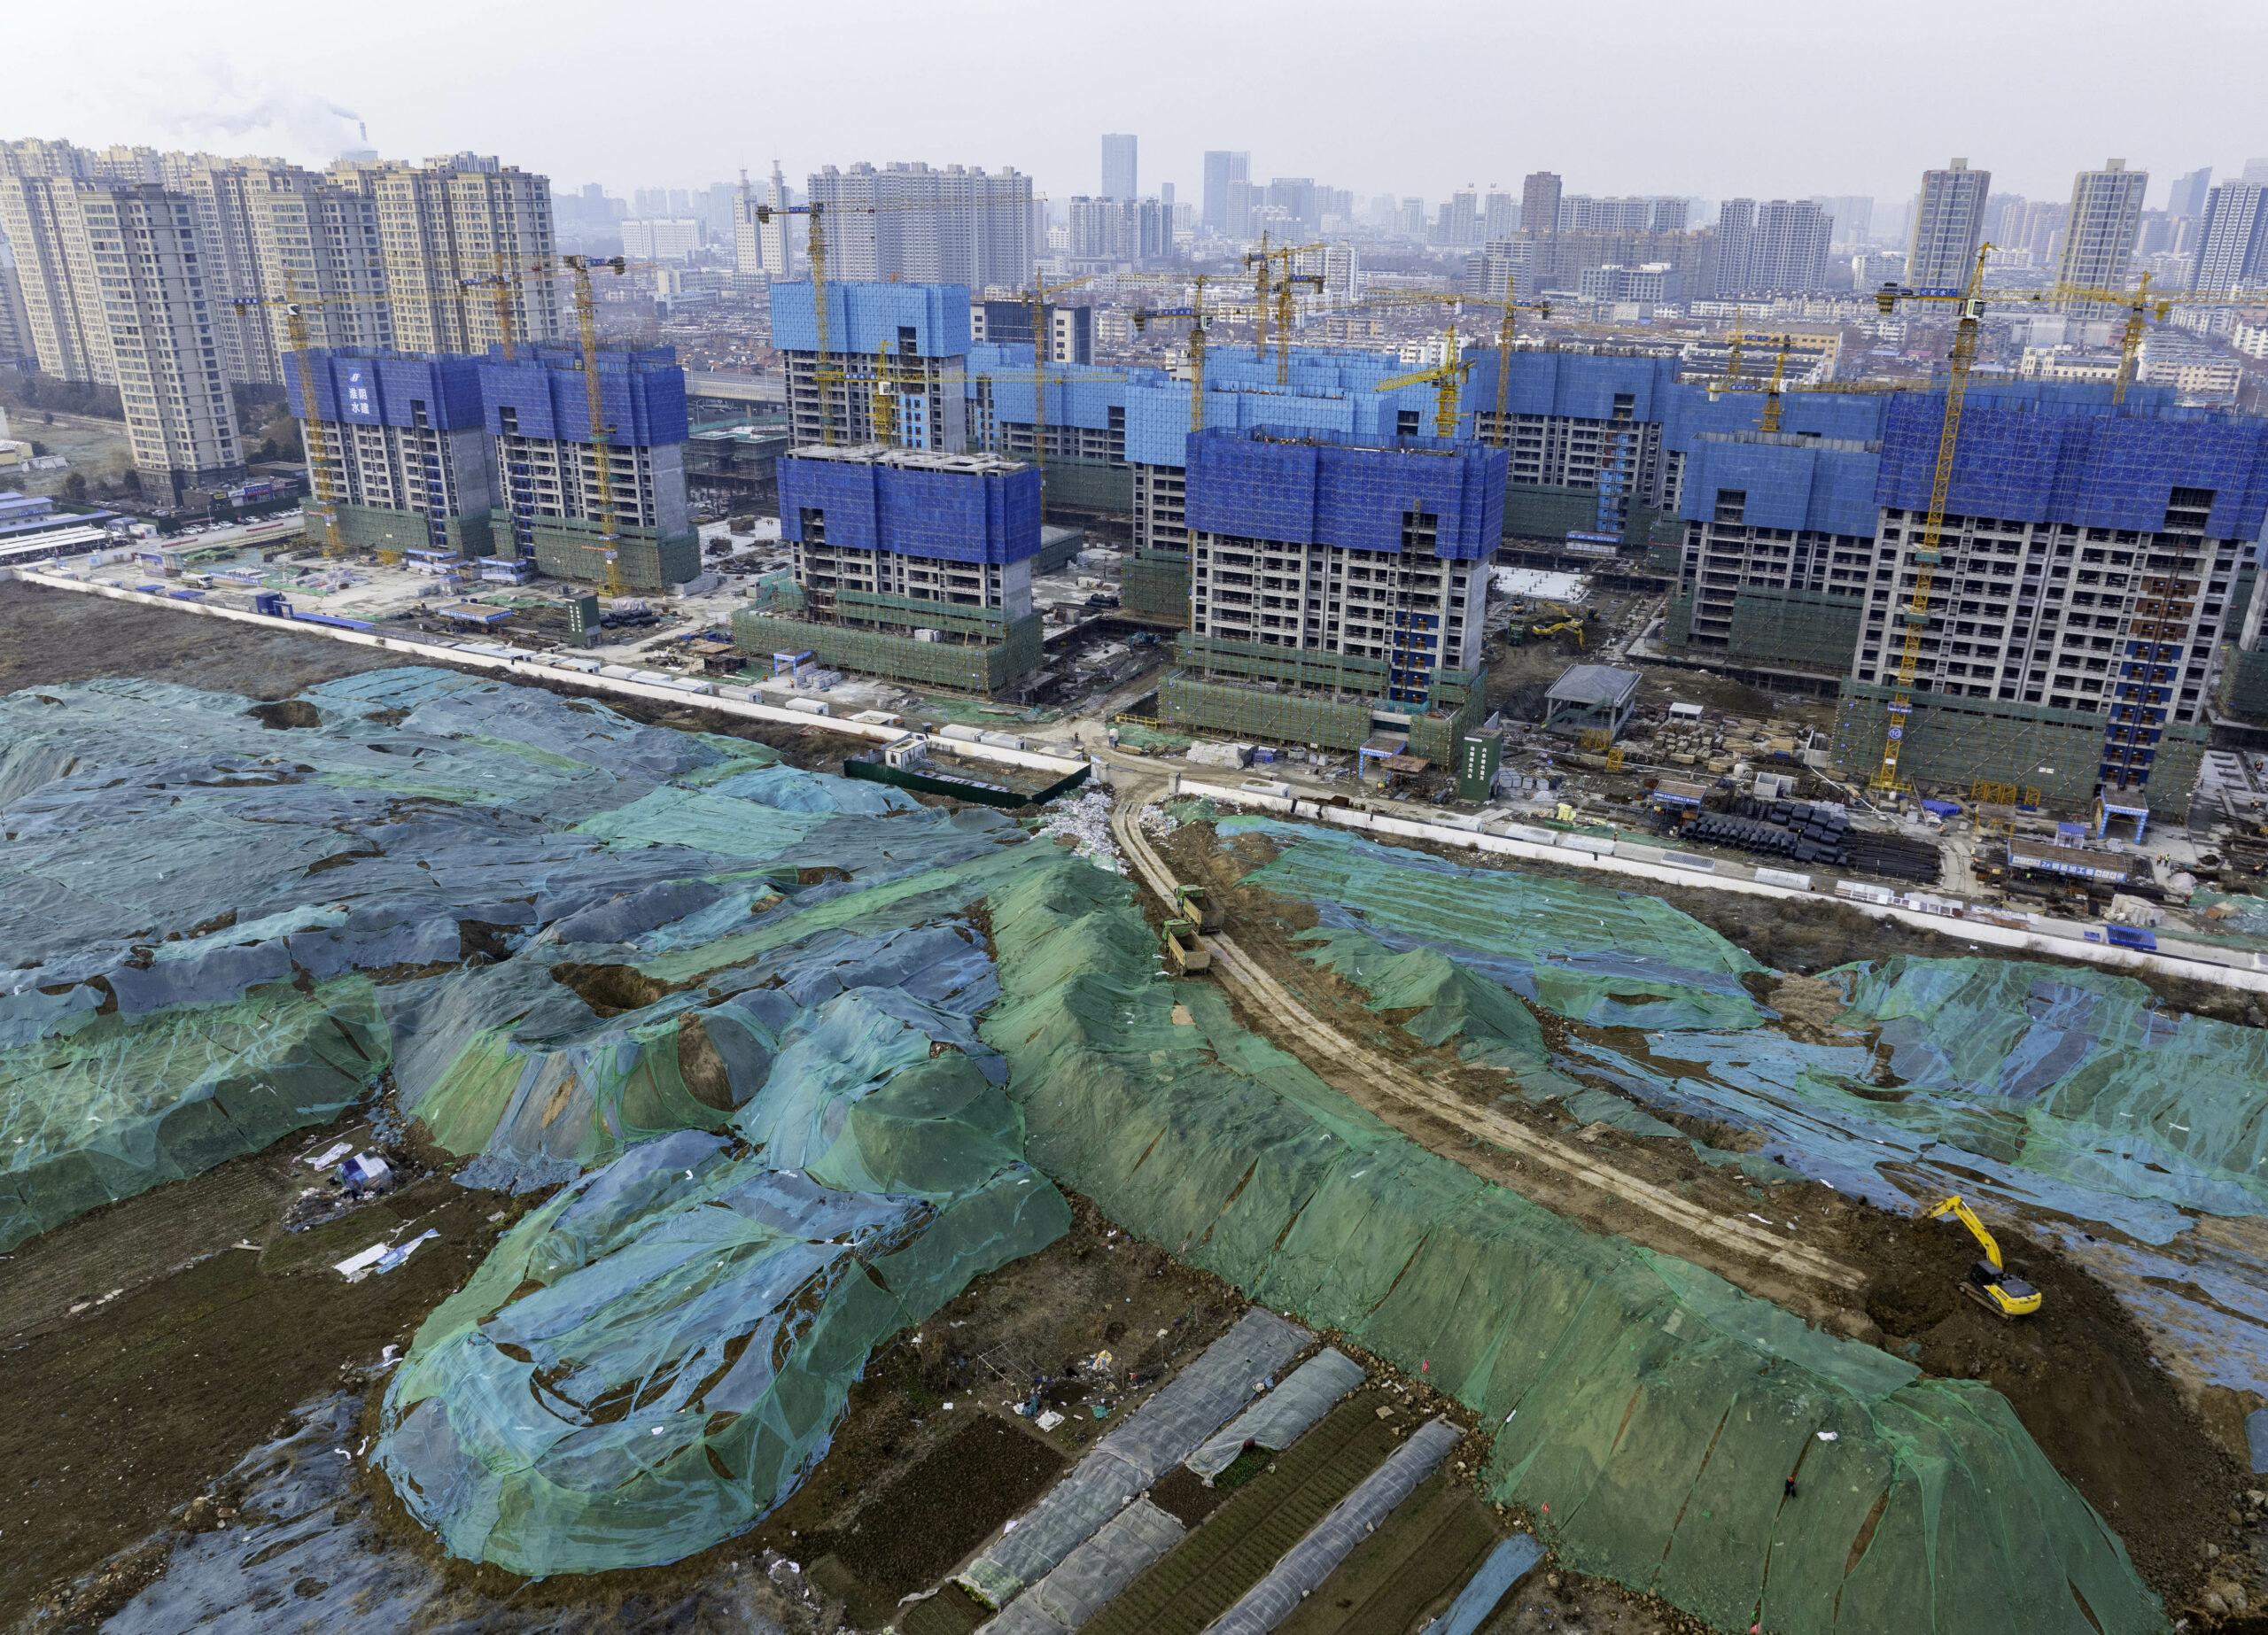 IMF pričakuje, da se bo povpraševanje po novih stanovanjih na Kitajskem v naslednjem desetletju zmanjšalo za približno 50 %